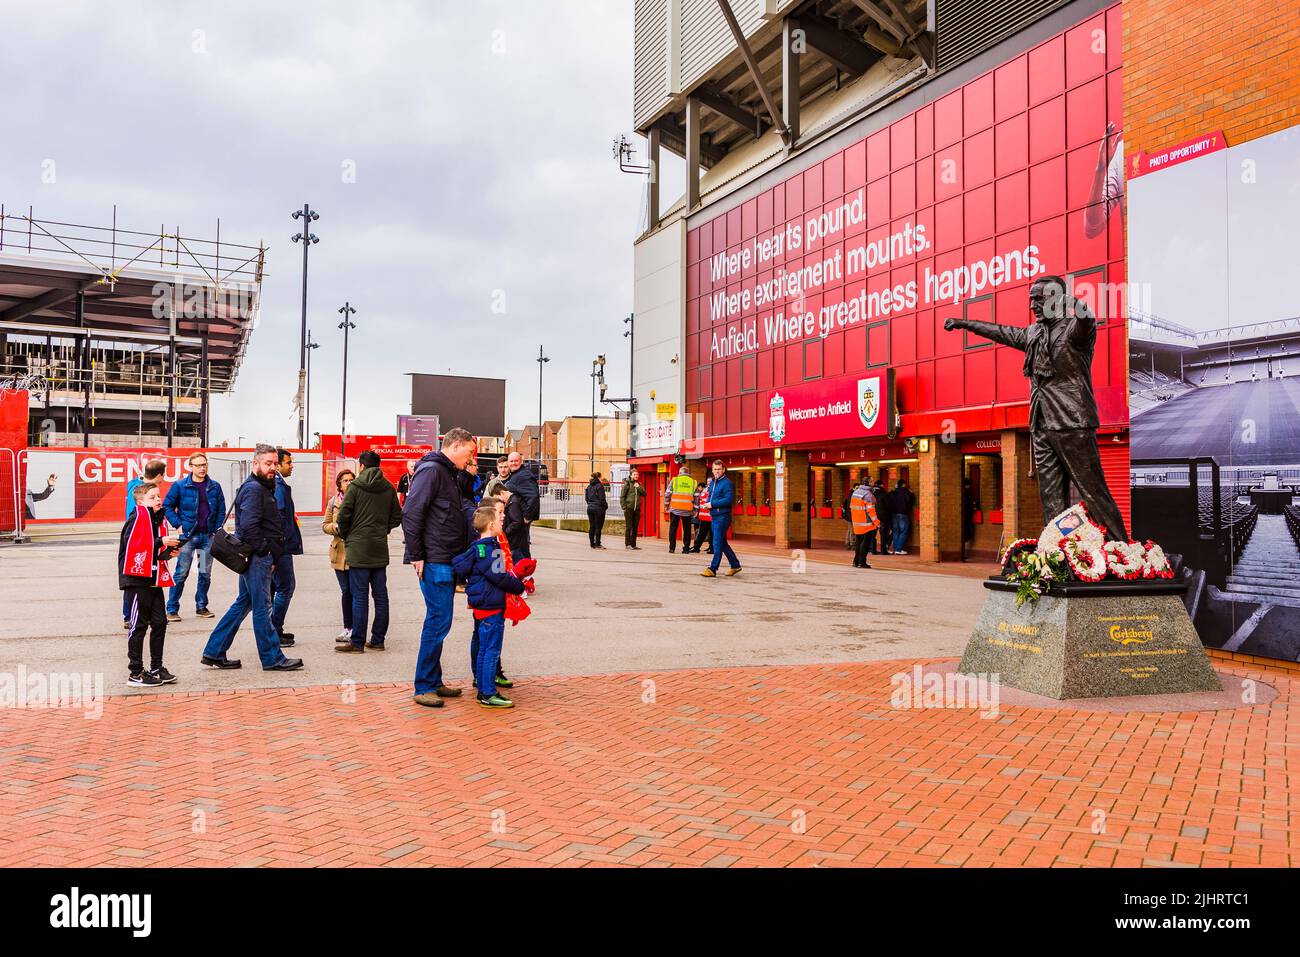 Liverpool F.C. Supporters à côté de la statue de Bill Shankly au stade Anfield. Anfield, Liverpool, Merseyside, Lancashire, Angleterre, Royaume-Uni Banque D'Images